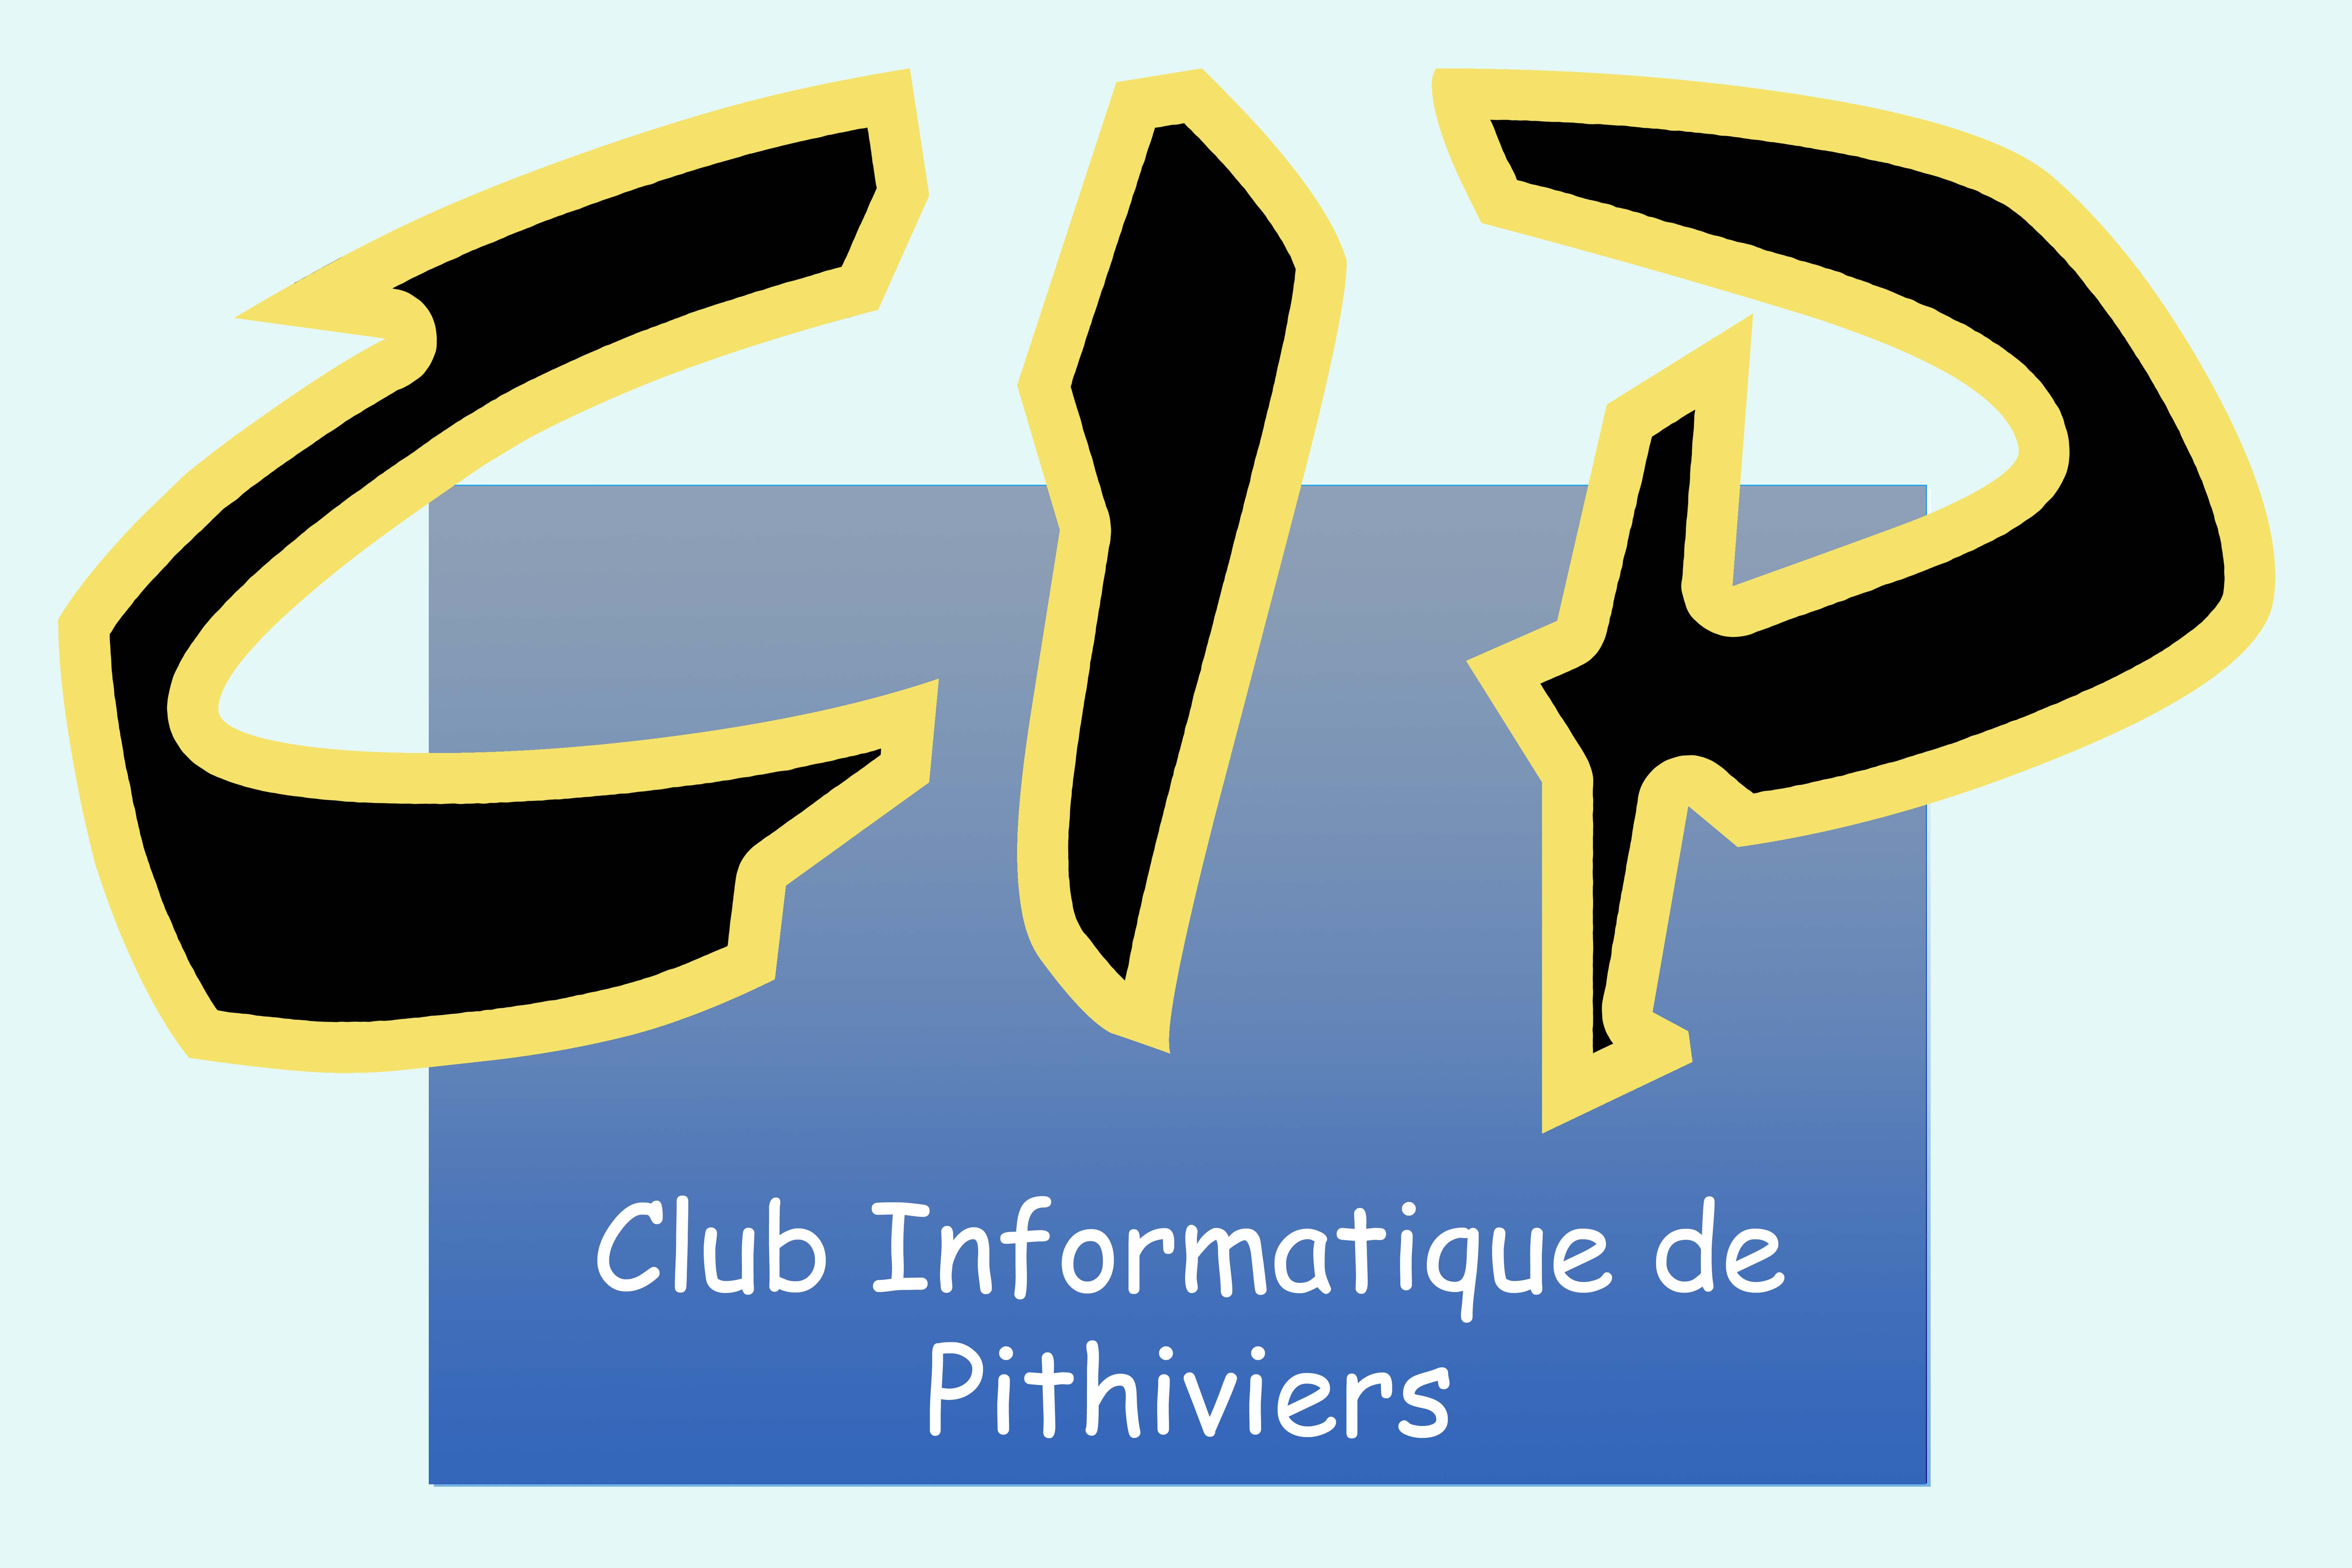 Club informatique de Pithiviers